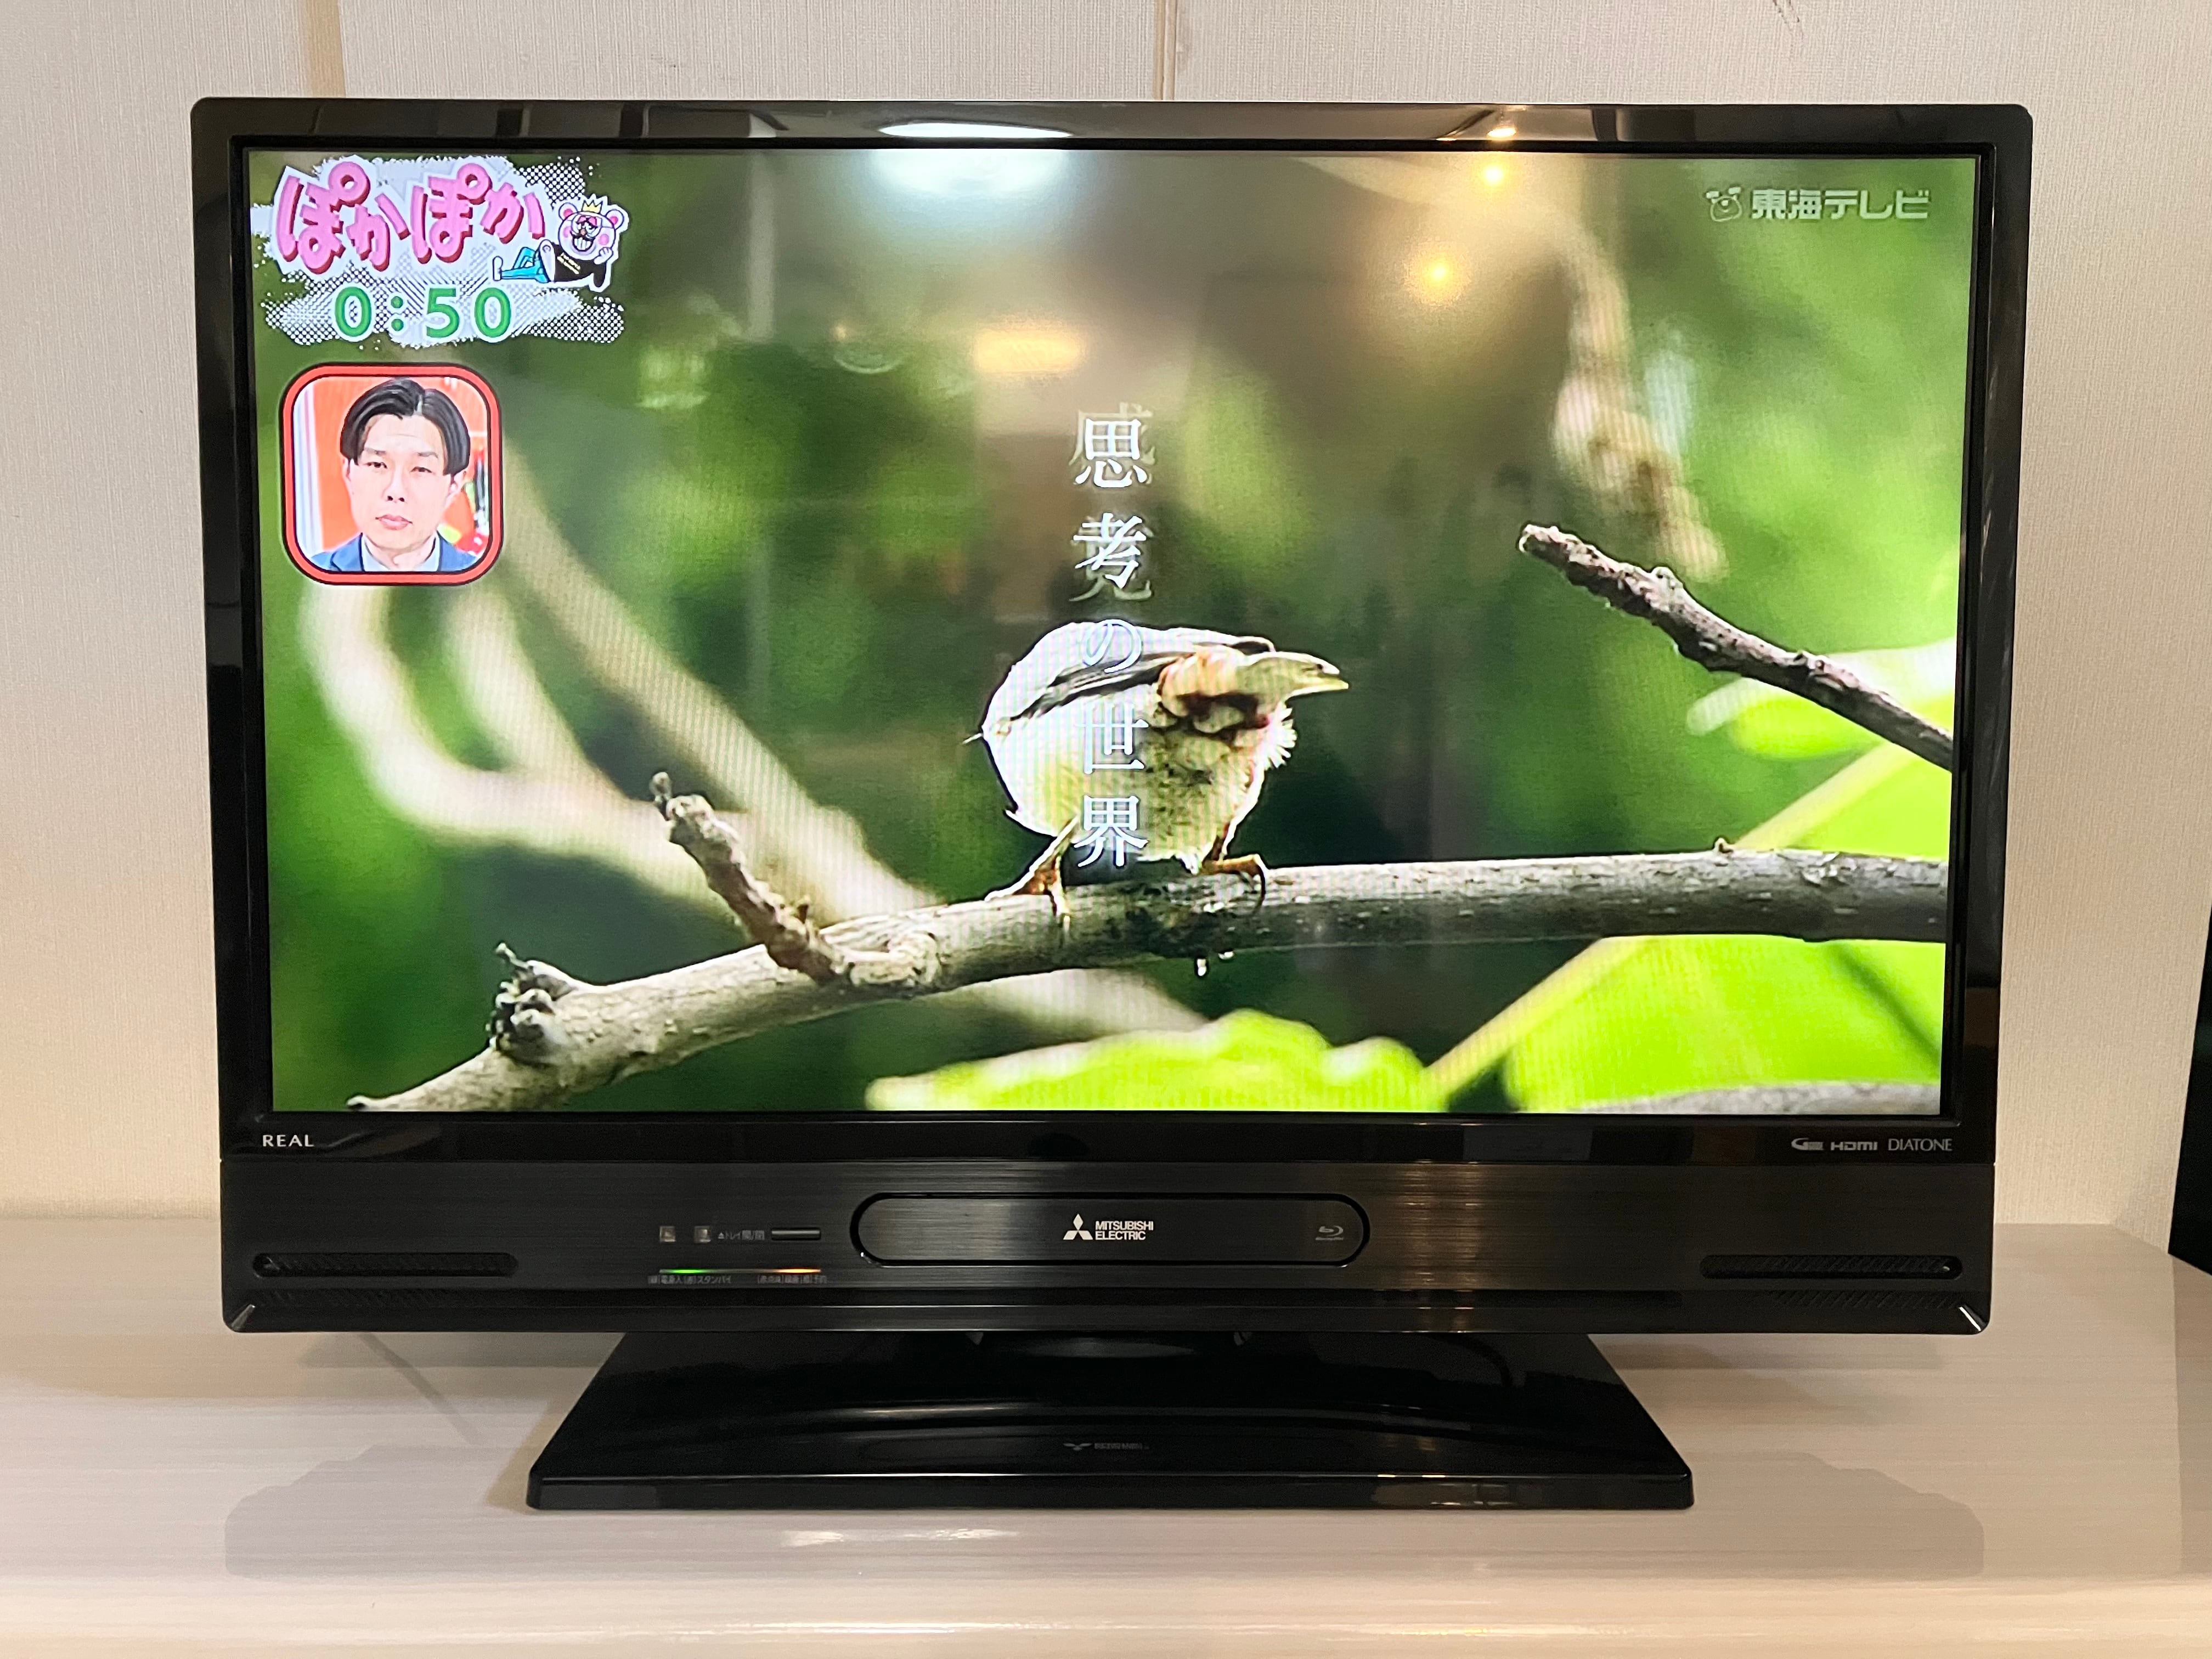 2017年製 32型 MITSUBISHI Blue-ray内蔵 HDD 液晶テレビ LCD-A32BHR85